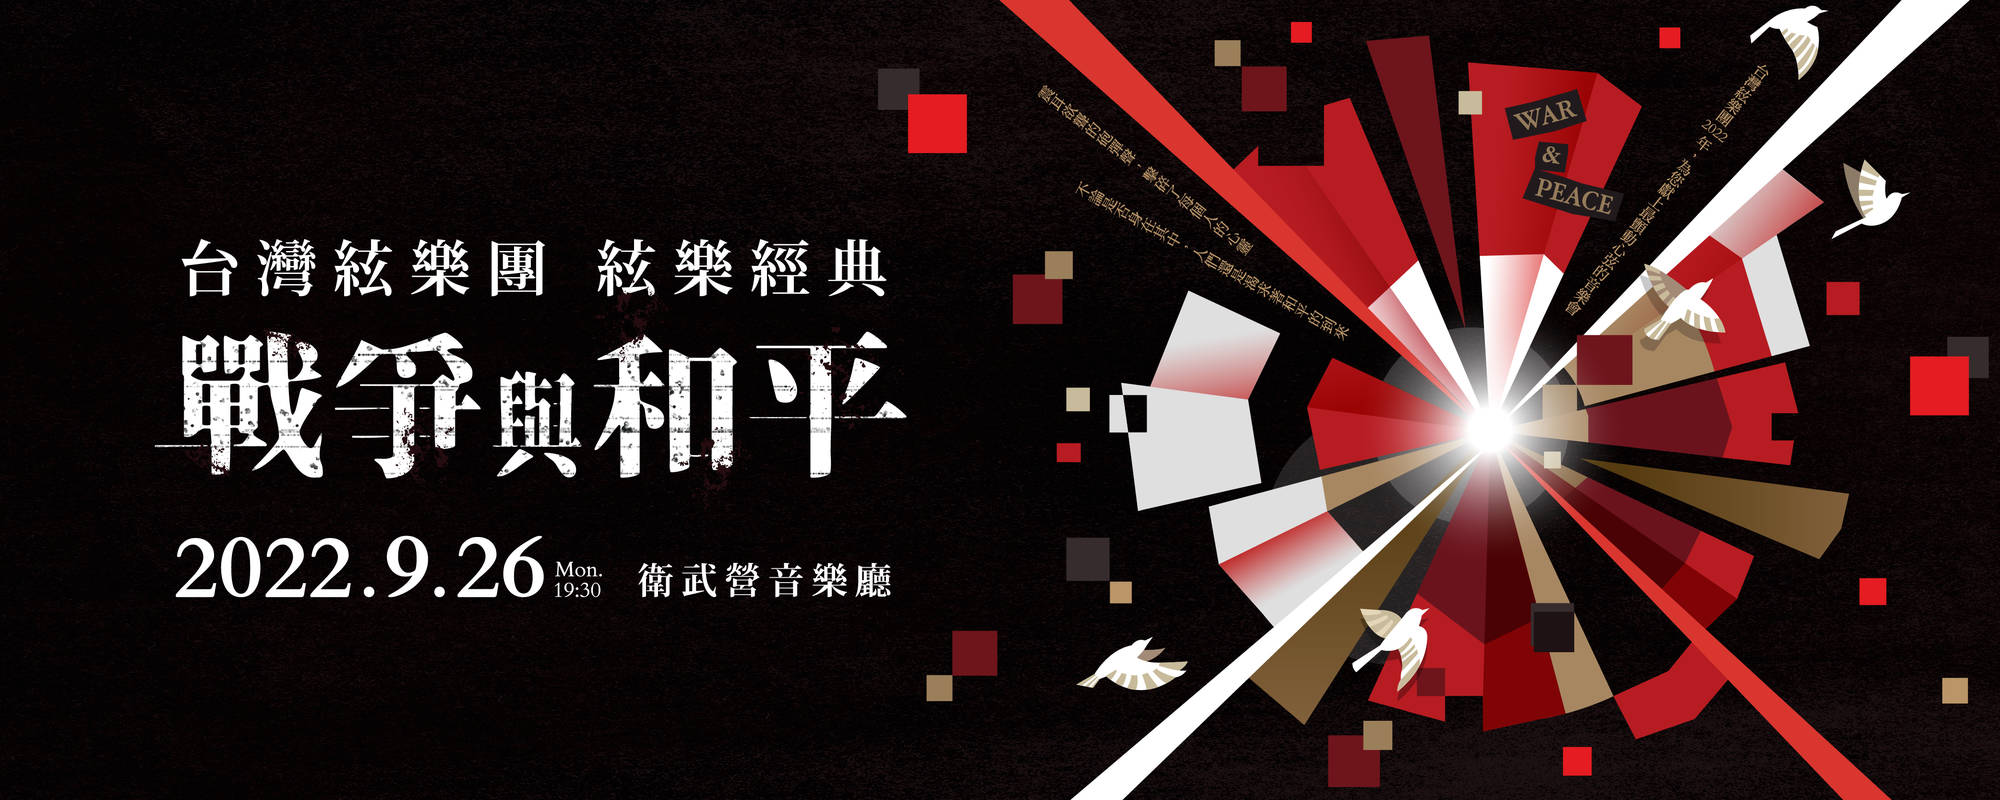 《戰爭與和平 2022台灣絃樂團 絃樂經典》